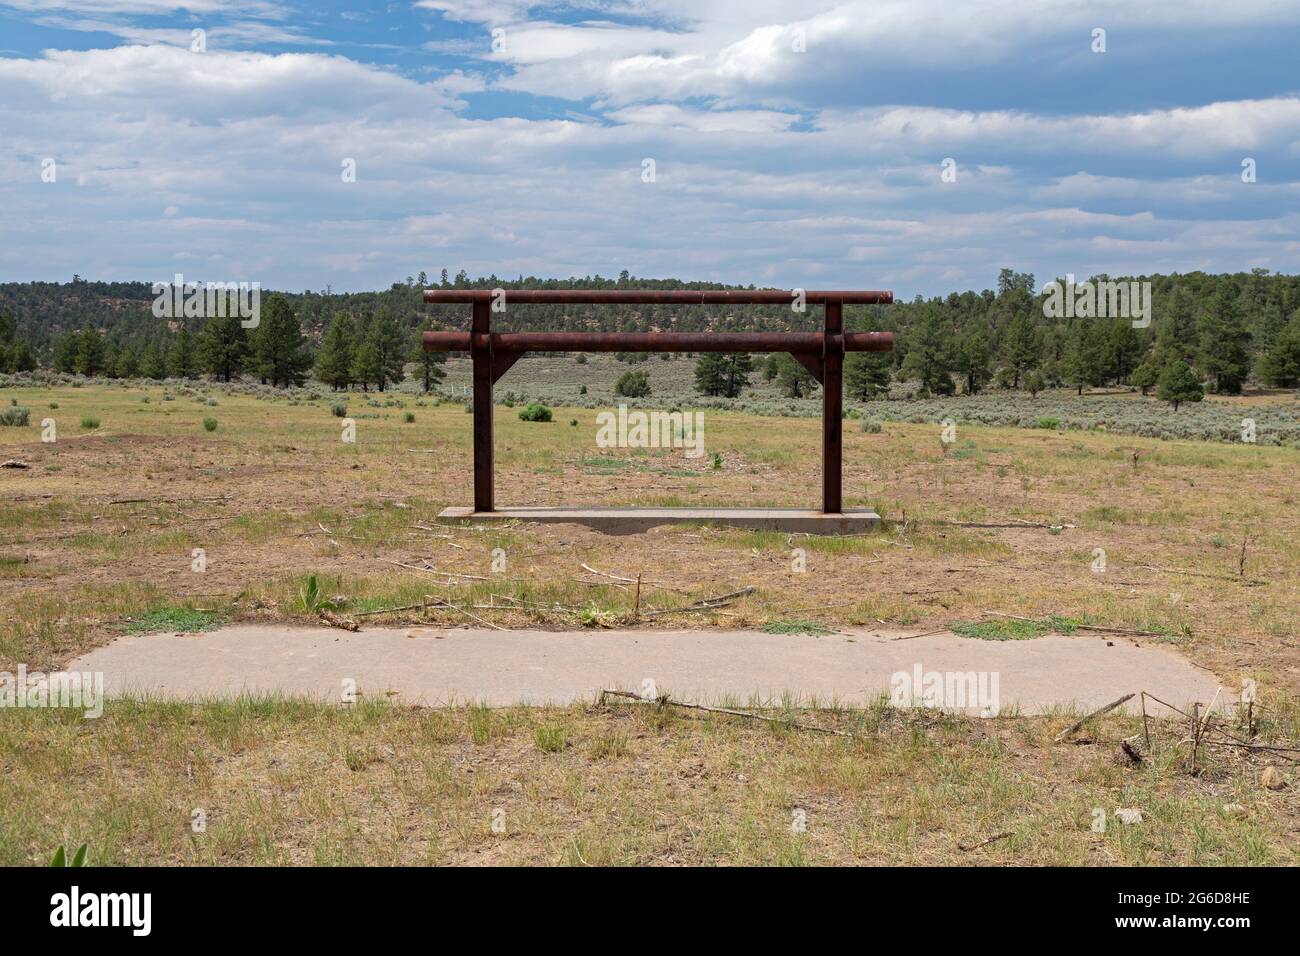 Dulce, New Mexico - il sito del progetto Gasbuggy, un'esplosione nucleare del 1967 progettata per fratturare la roccia per estrarre gas naturale. Il progetto faceva parte di o Foto Stock